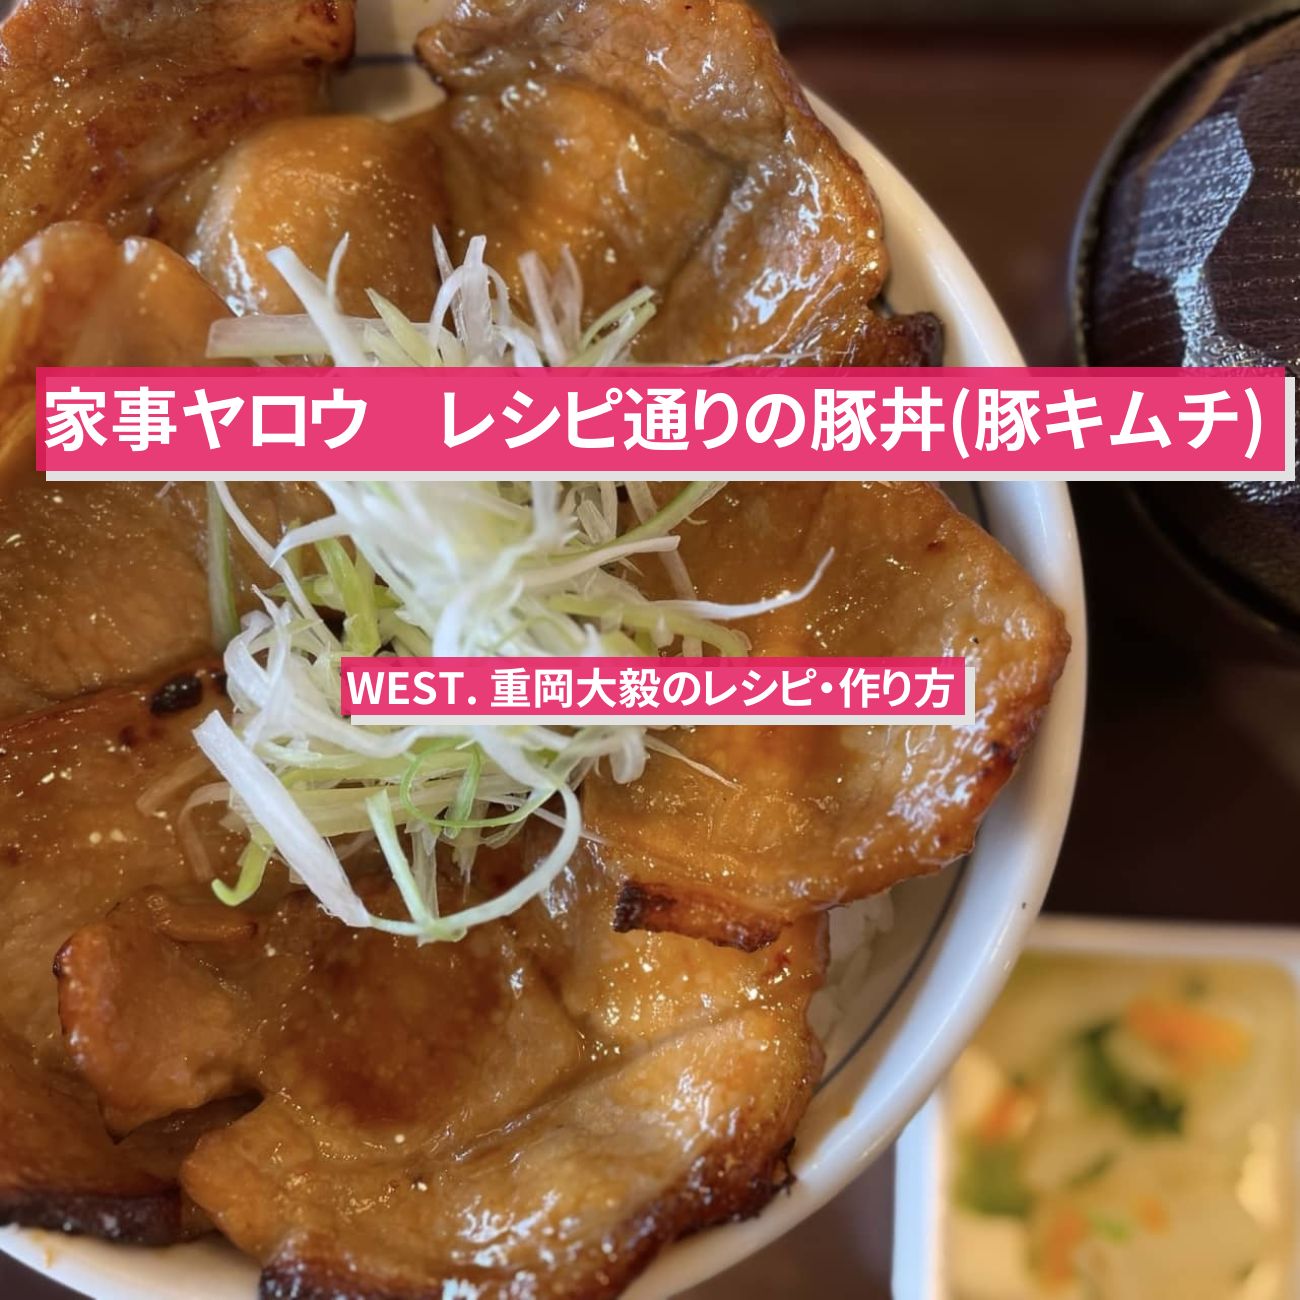 【家事ヤロウ】『豚丼 (豚キムチ丼) 』WEST. 重岡大毅のレシピ・作り方